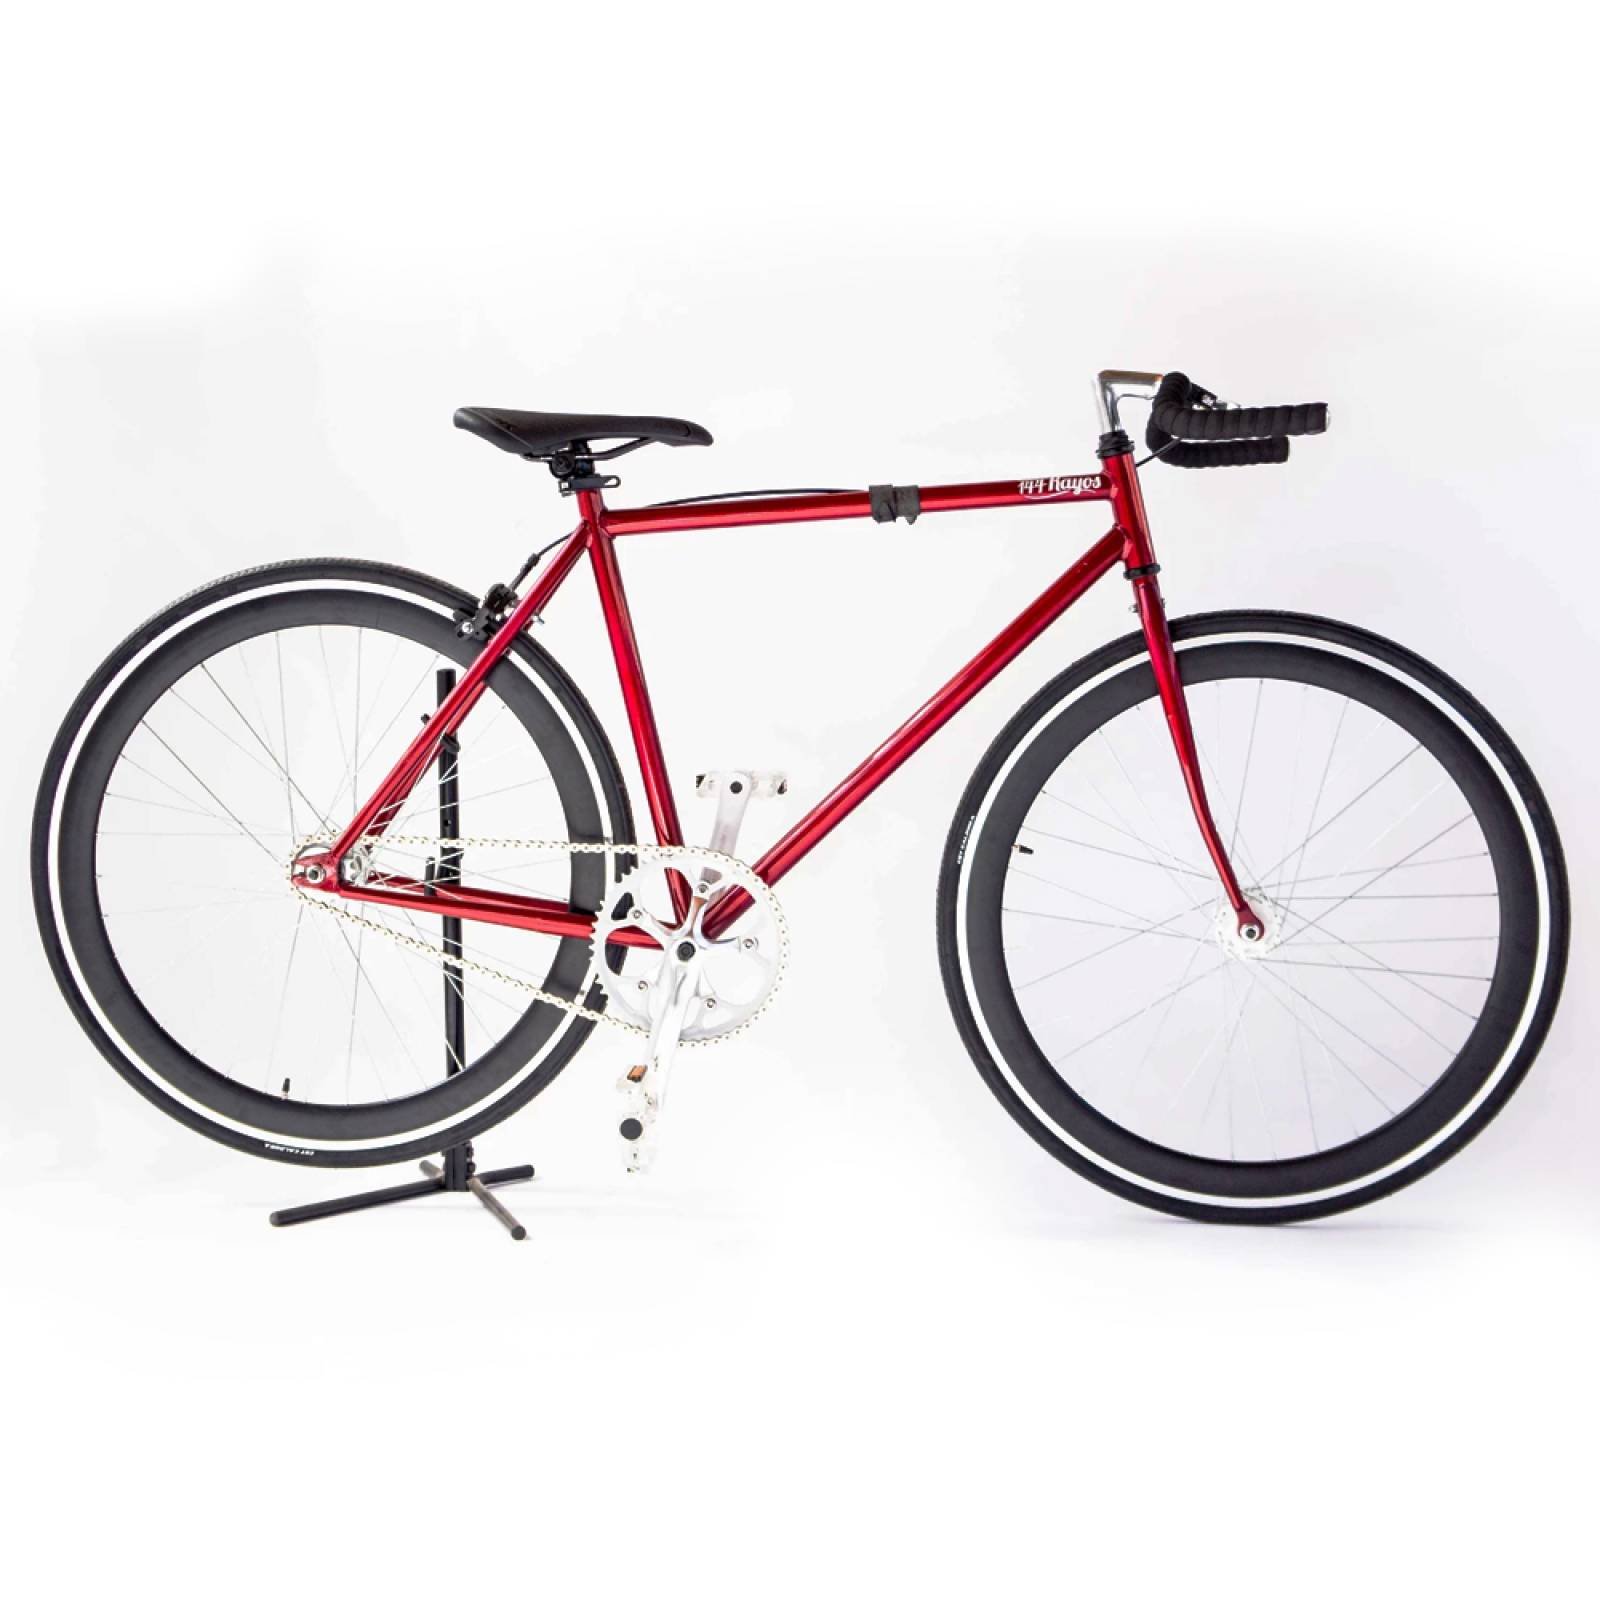 Bici 700 Acero Red-Black Manubrio Recto 144 Rayos Bikes